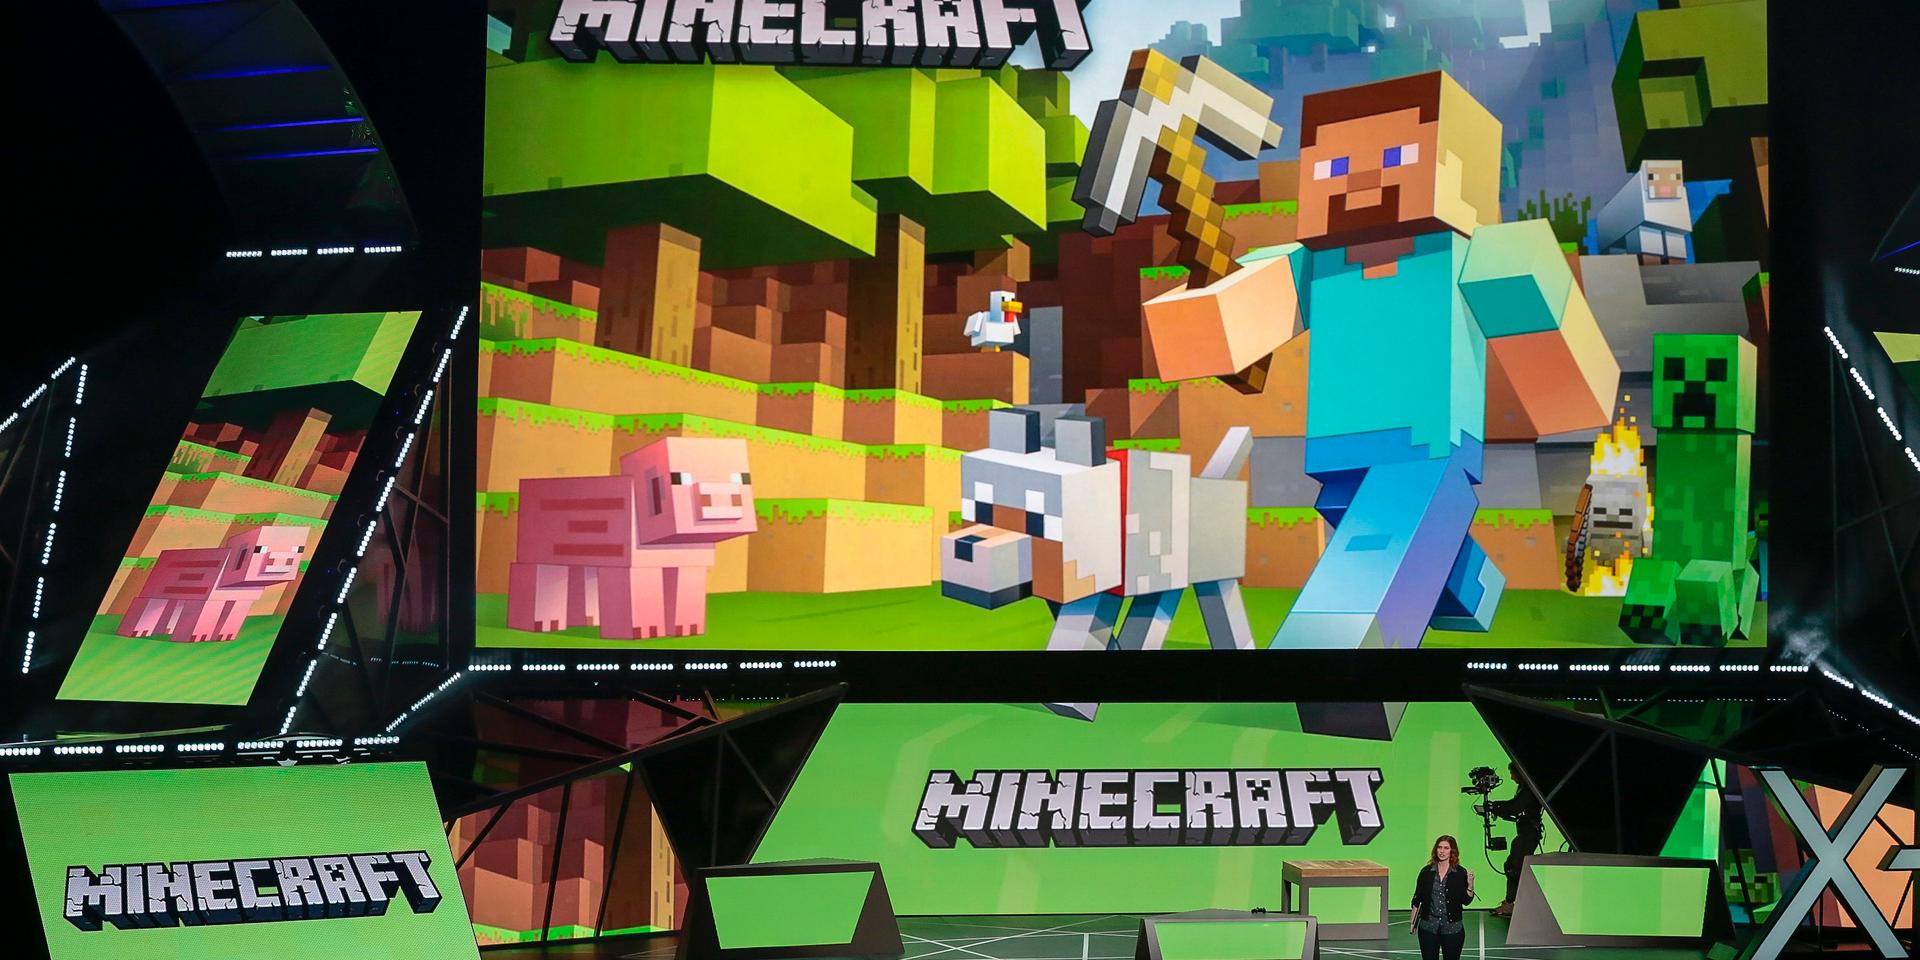 Arkivbild. Minecraft är ett populärt datorspel där spelarna kan bygga upp egna världar med användning av block.